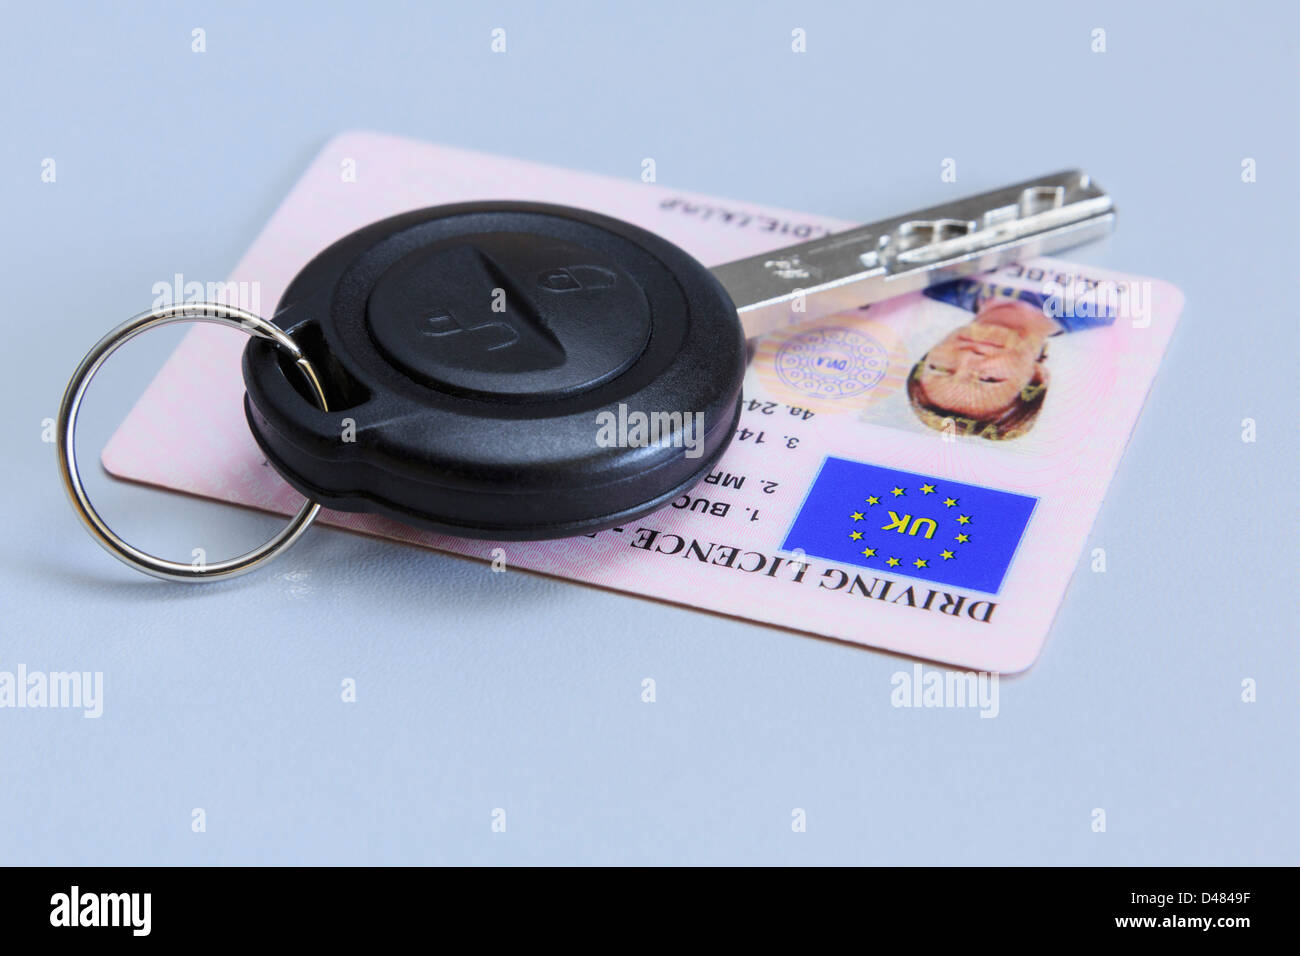 Clé de voiture à distance avec une carte en plastique de femme UK driving license photographique sur un fond bleu. Banque D'Images